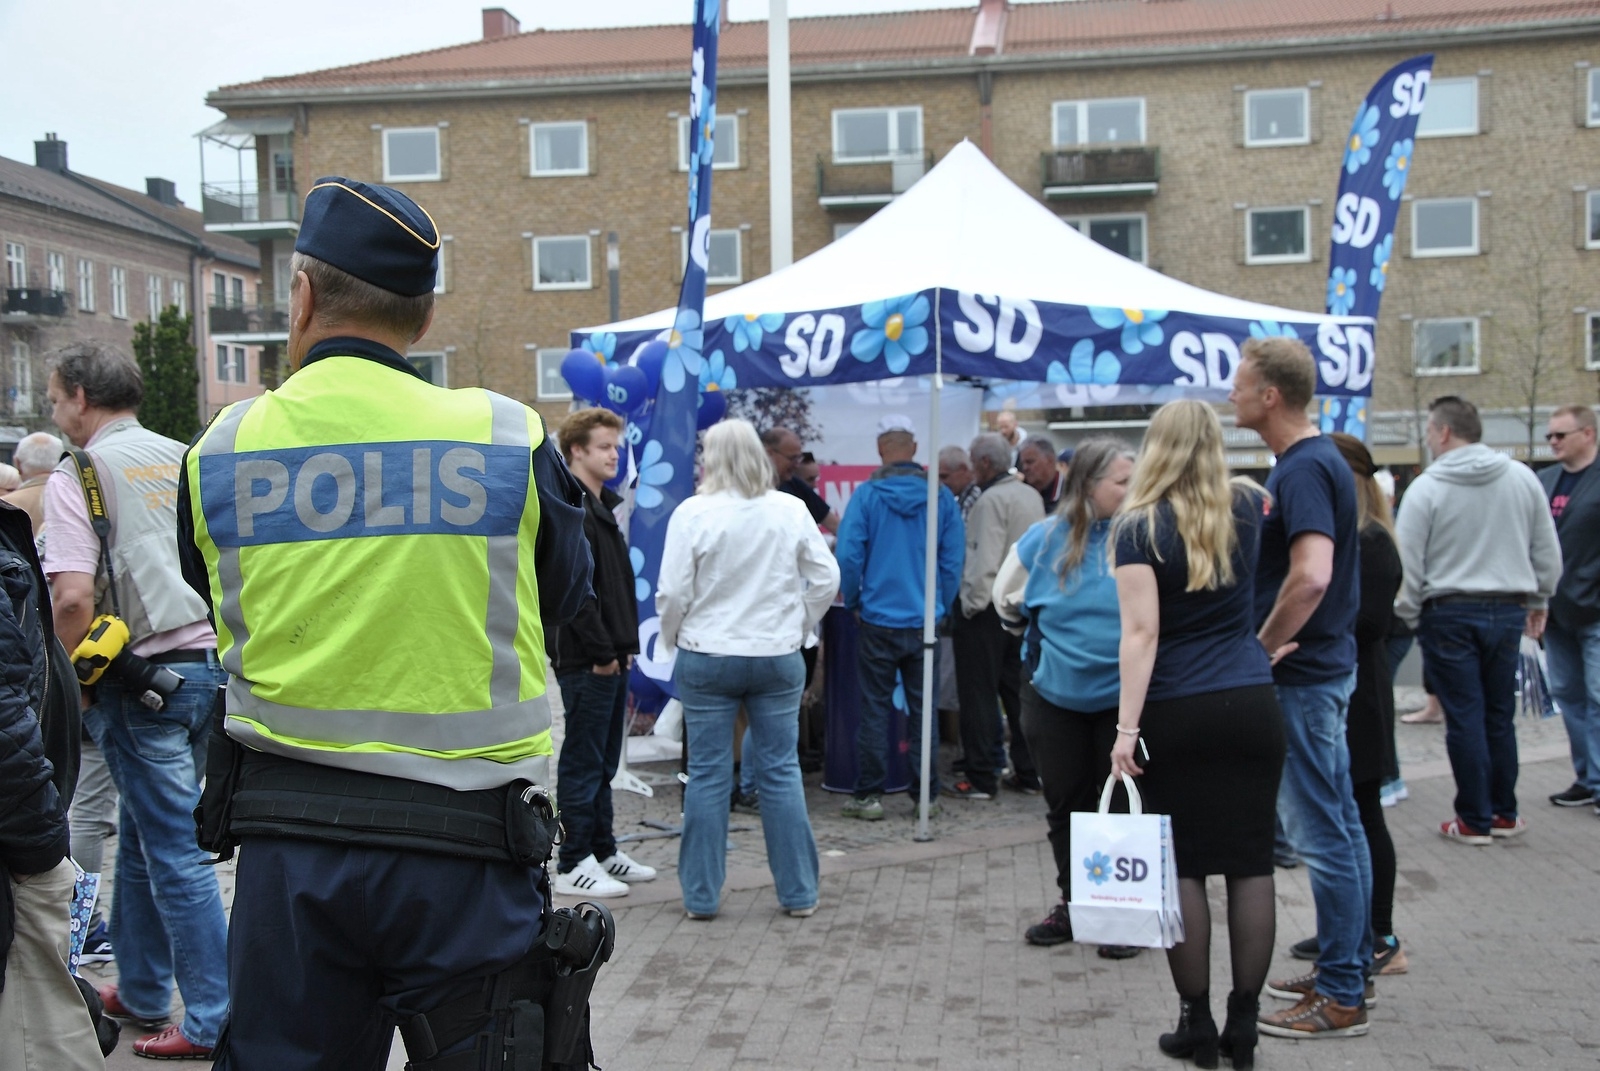 Några motdemonstranter syntes inte till. Polisen fick det lugnt under Jimmie Åkessons besök i Hässleholm.